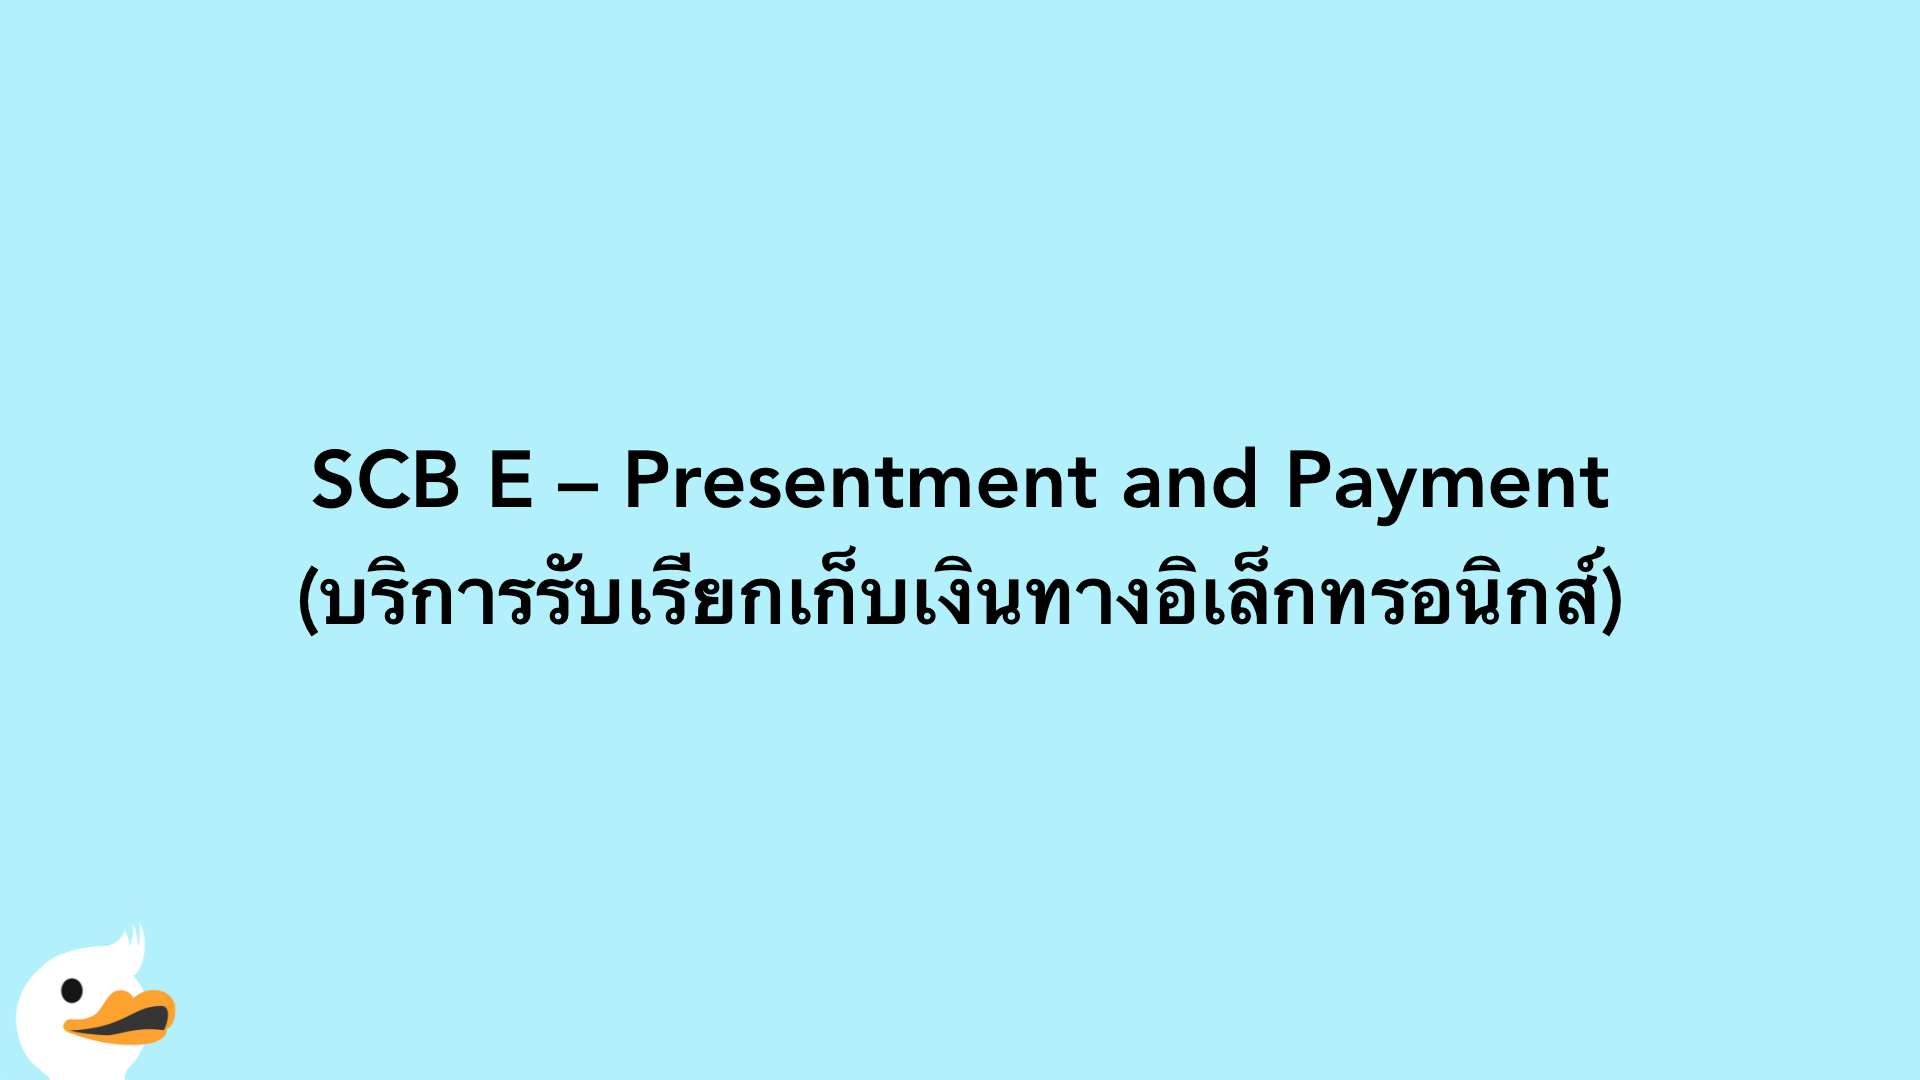 SCB E – Presentment and Payment (บริการรับเรียกเก็บเงินทางอิเล็กทรอนิกส์)